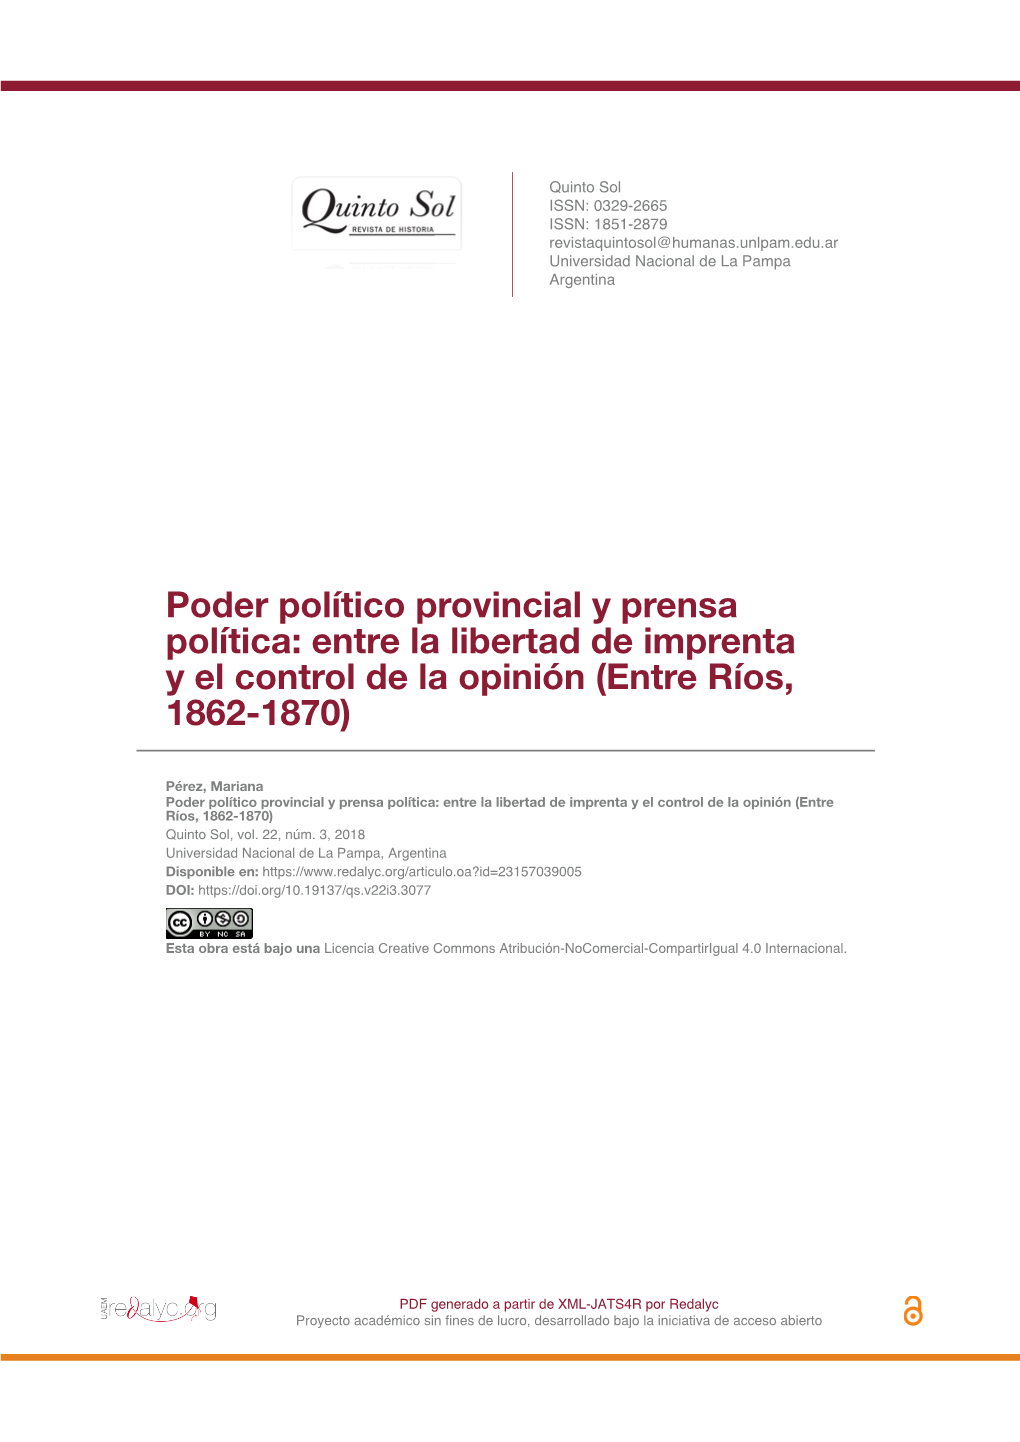 Poder Político Provincial Y Prensa Política: Entre La Libertad De Imprenta Y El Control De La Opinión (Entre Ríos, 1862-1870)